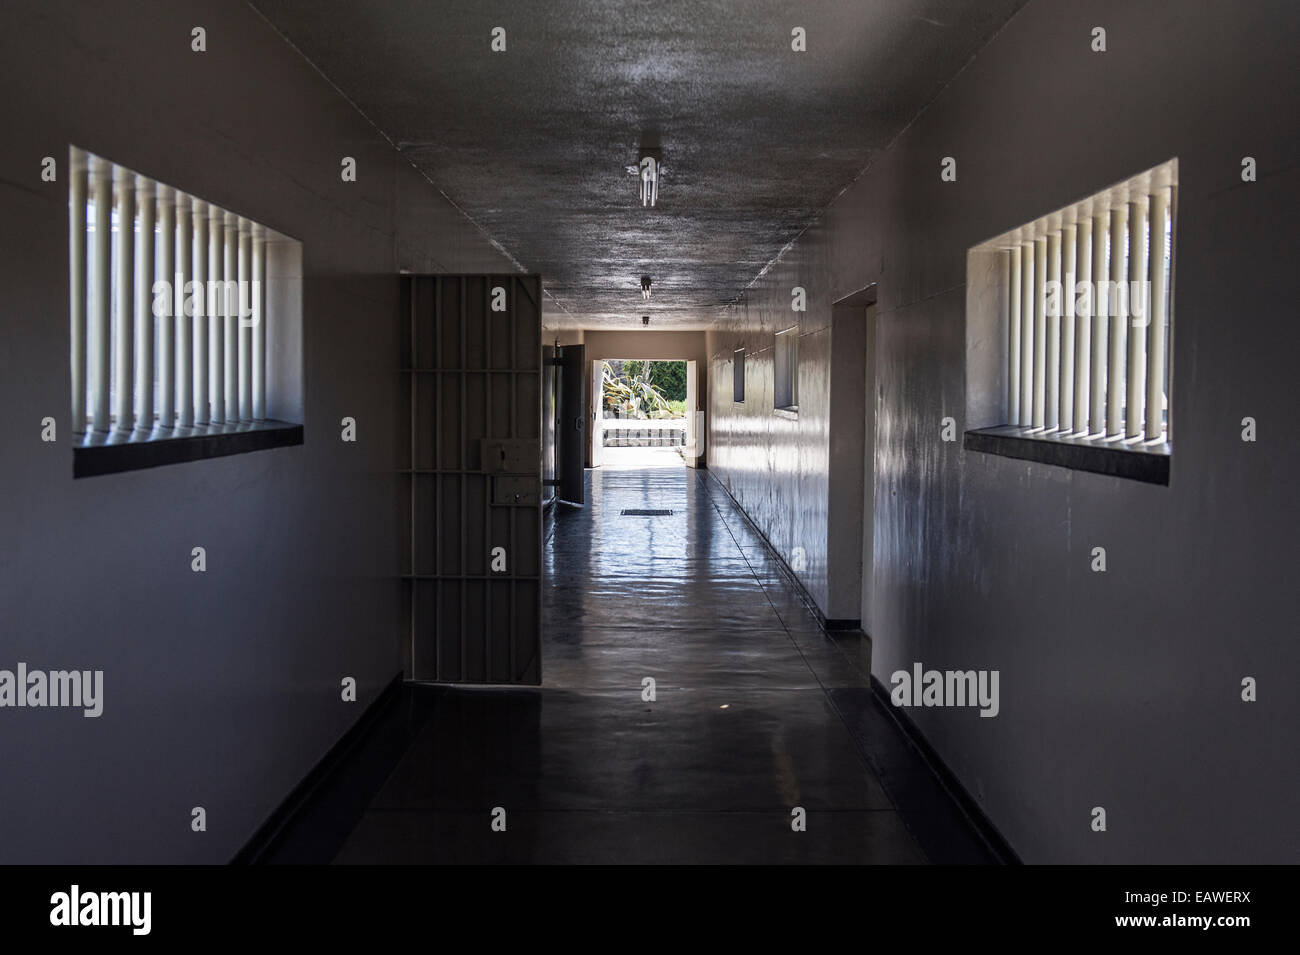 La cárcel austero corredor con piso de hormigón pulido y rejas de ventana. Foto de stock